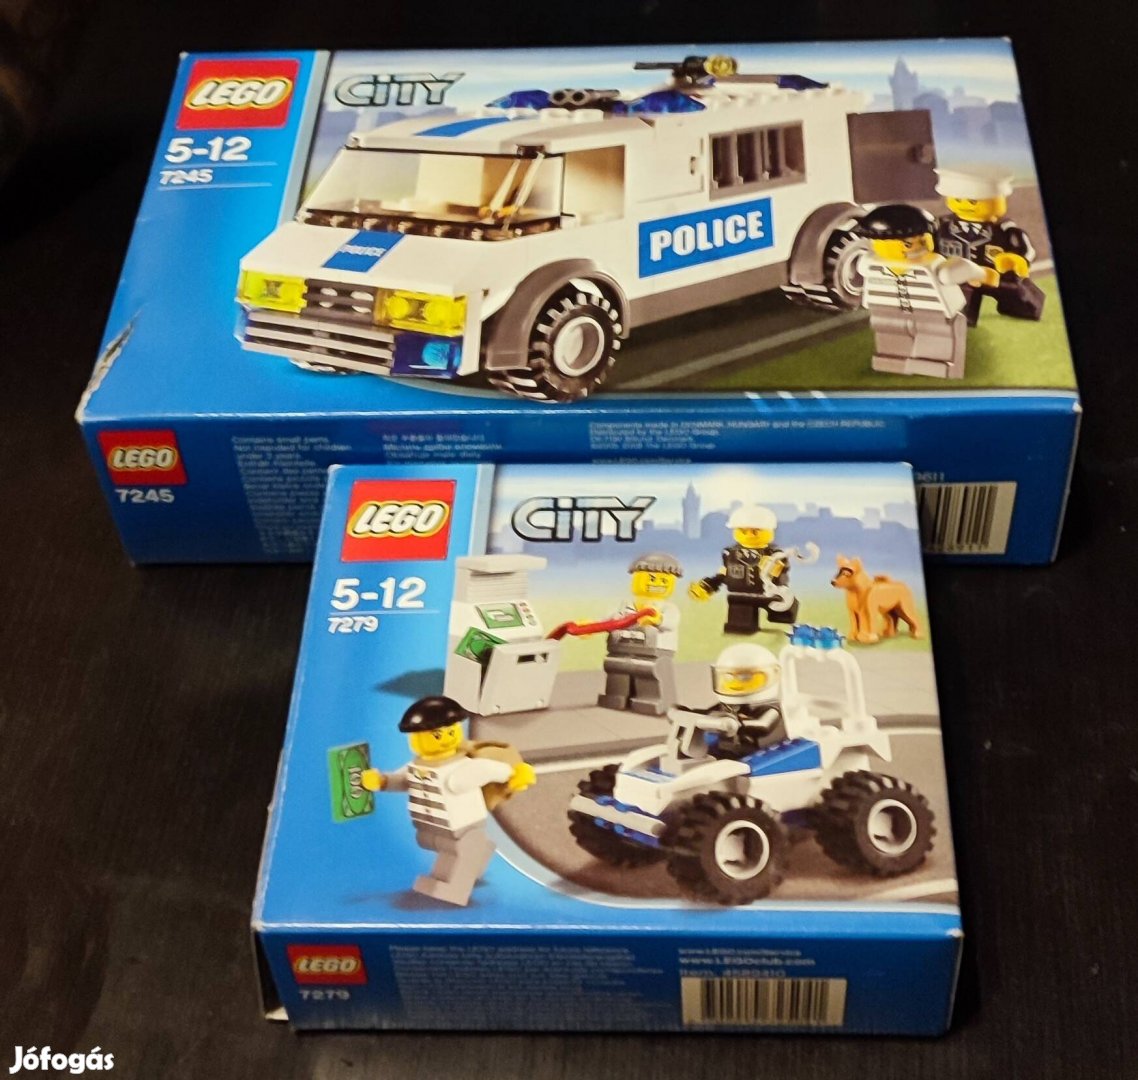 Lego city 7272 és 7245